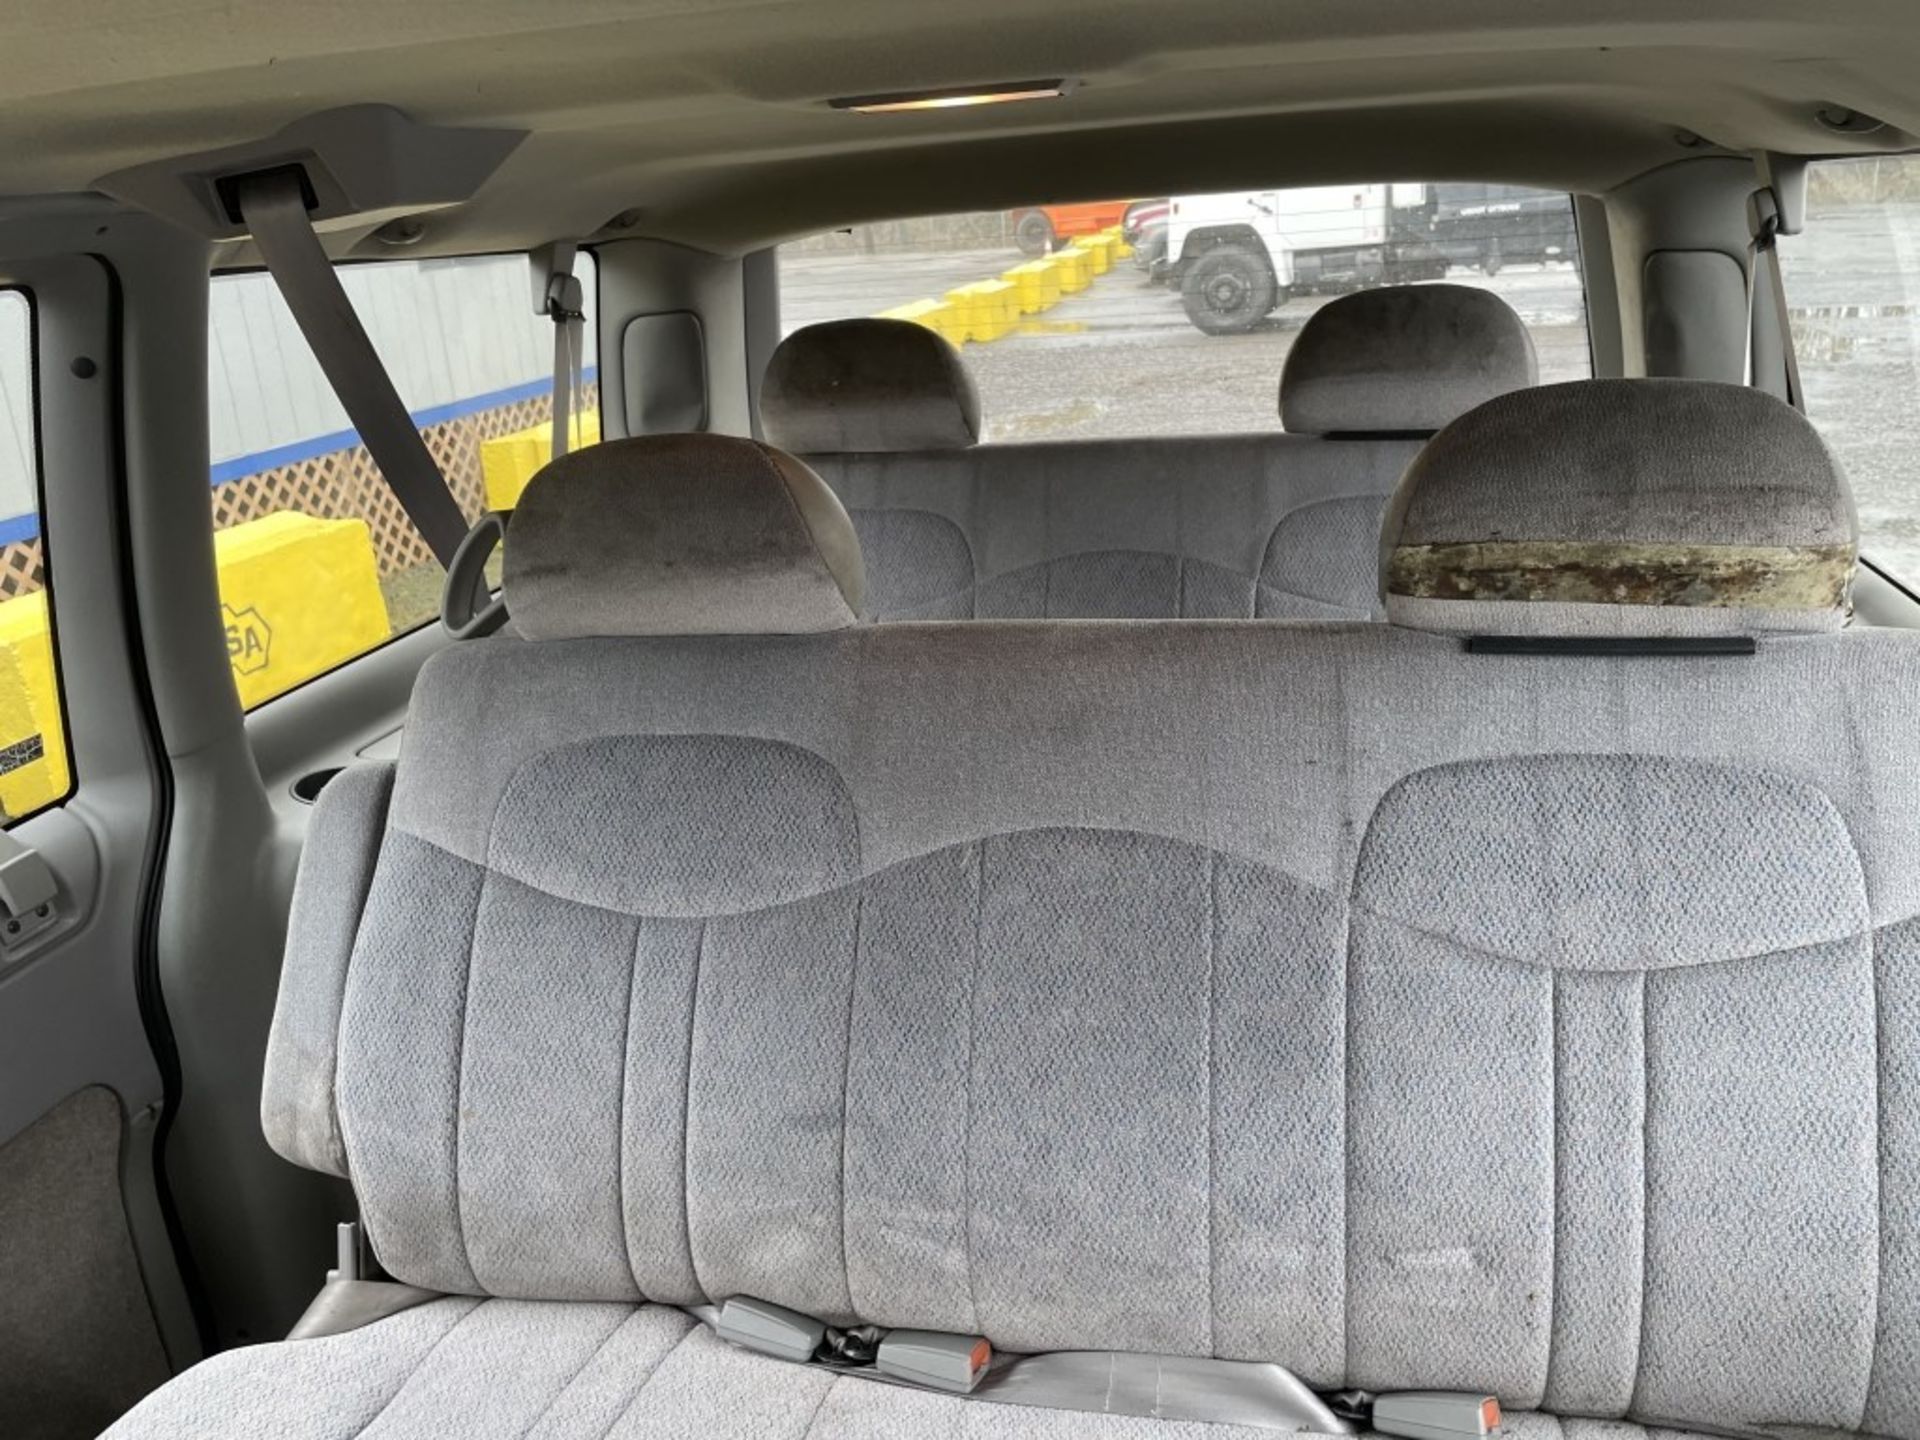 1997 Chevrolet Astro Passenger Van - Image 9 of 15